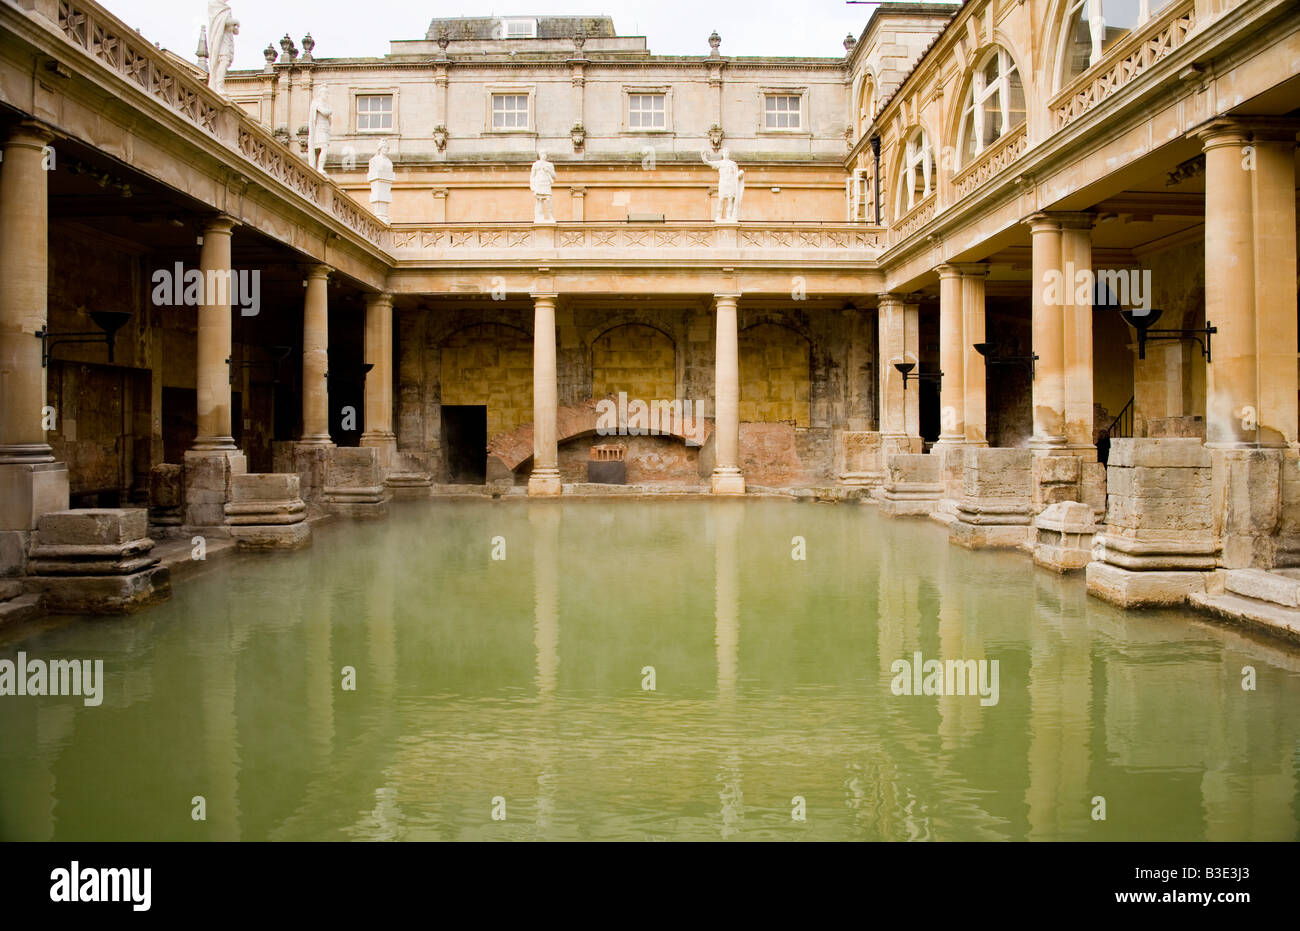 The Roman Baths and Bath Abbey, Bath, England Stock Photo